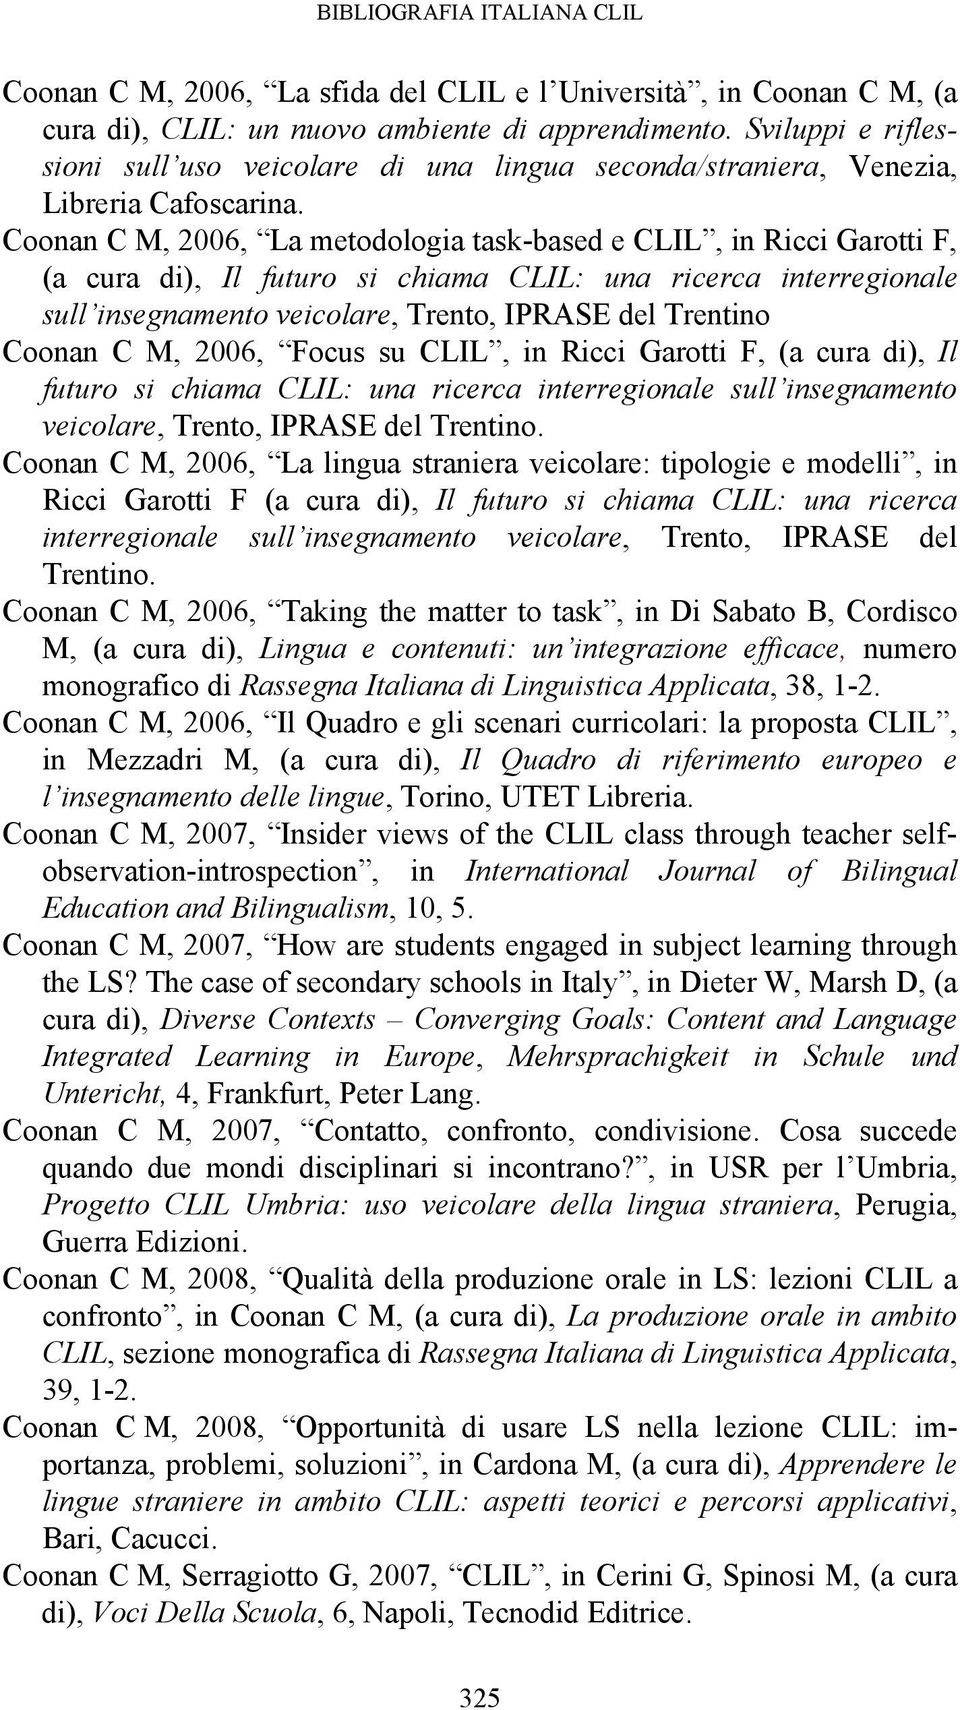 Coonan C M, 2006, La metodologia task-based e CLIL, in Ricci Garotti F, (a cura di), Il futuro si chiama CLIL: una ricerca interregionale sull insegnamento veicolare, Trento, IPRASE del Trentino